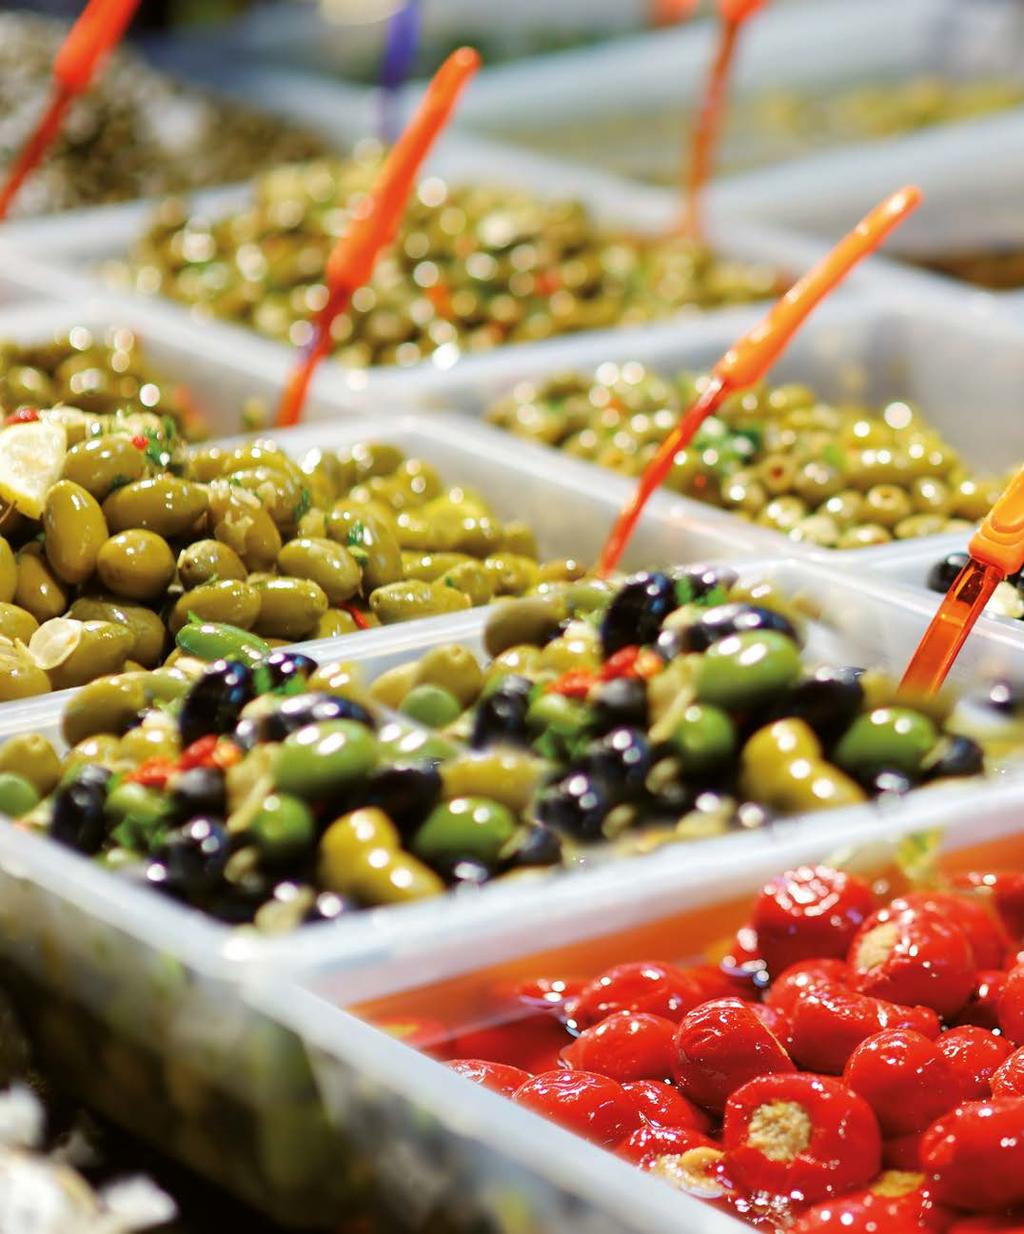 04 OLIVE IN VASCHETTA Le olive, uno dei prodotti più gustosi e sfizioni che